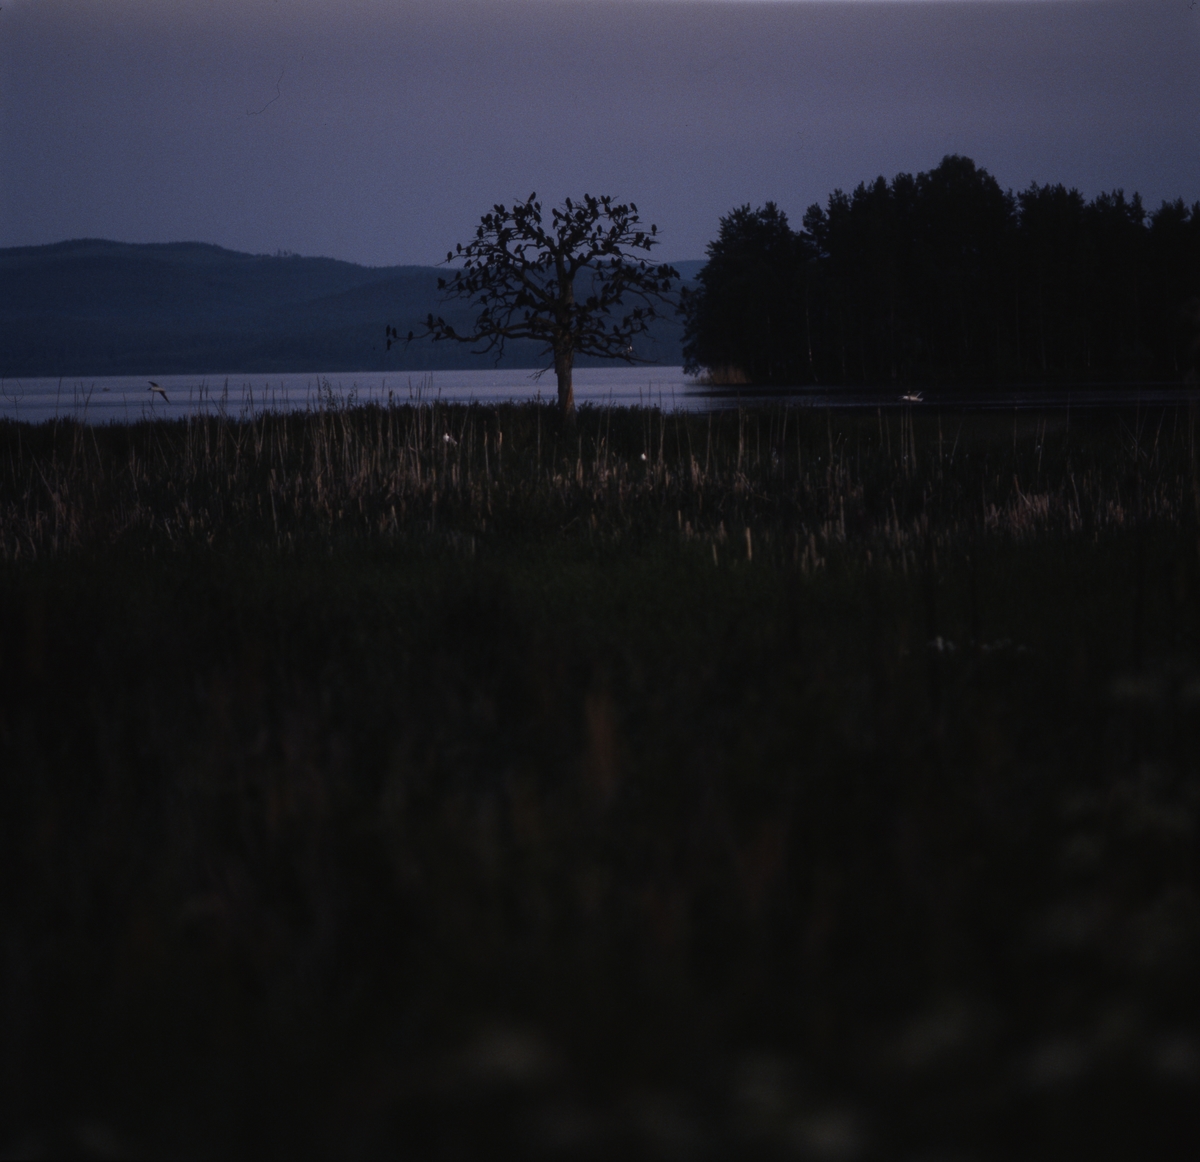 Nära vattnet står ett träd vars krona är full med kajor, Norrbo vid Sördellen juli 1991.